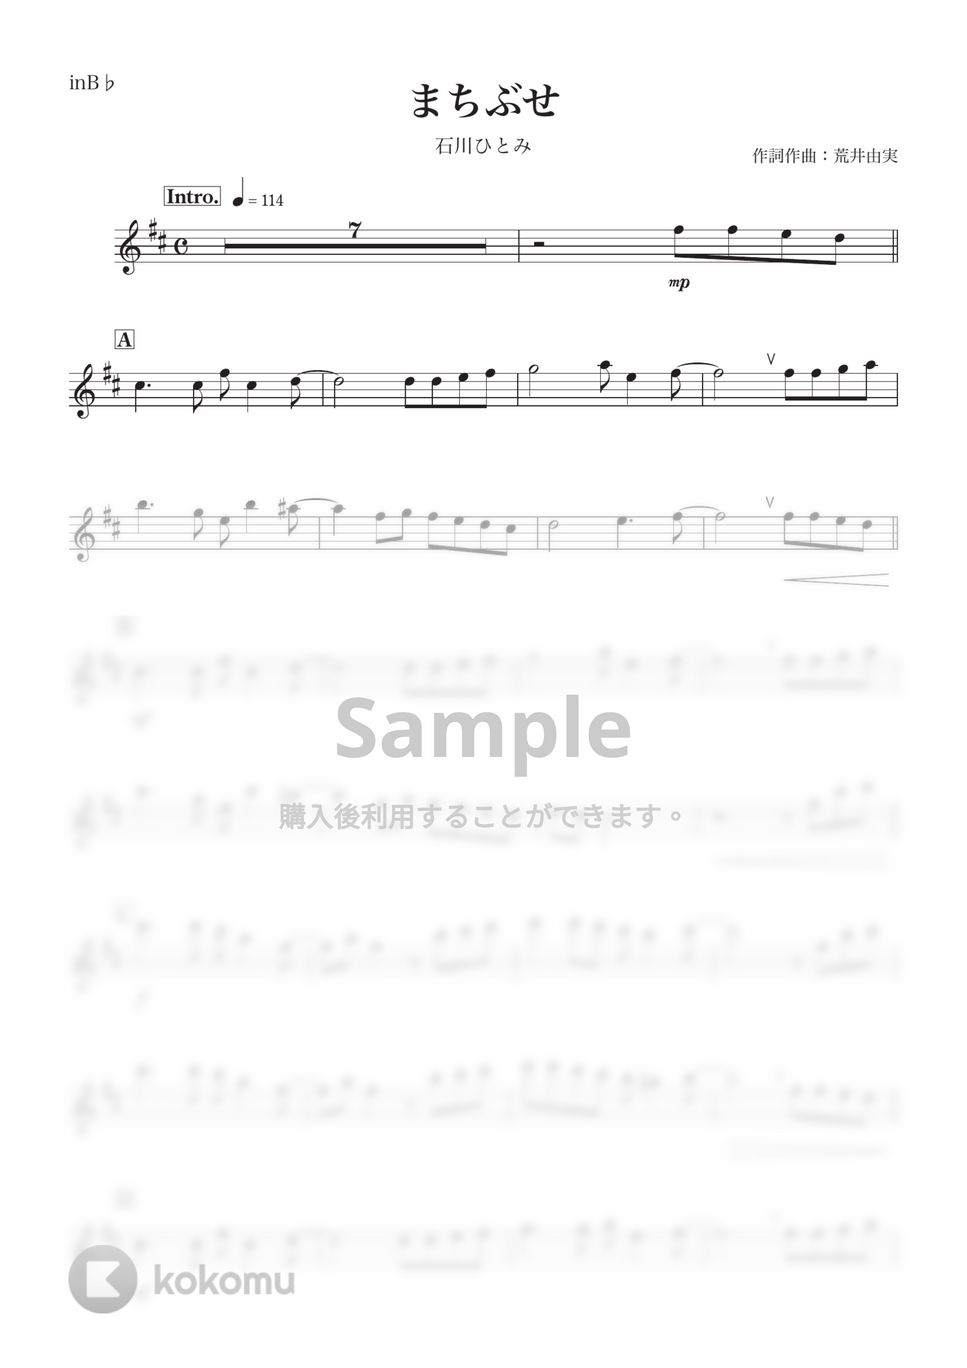 石川ひとみ - まちぶせ (B♭) by kanamusic